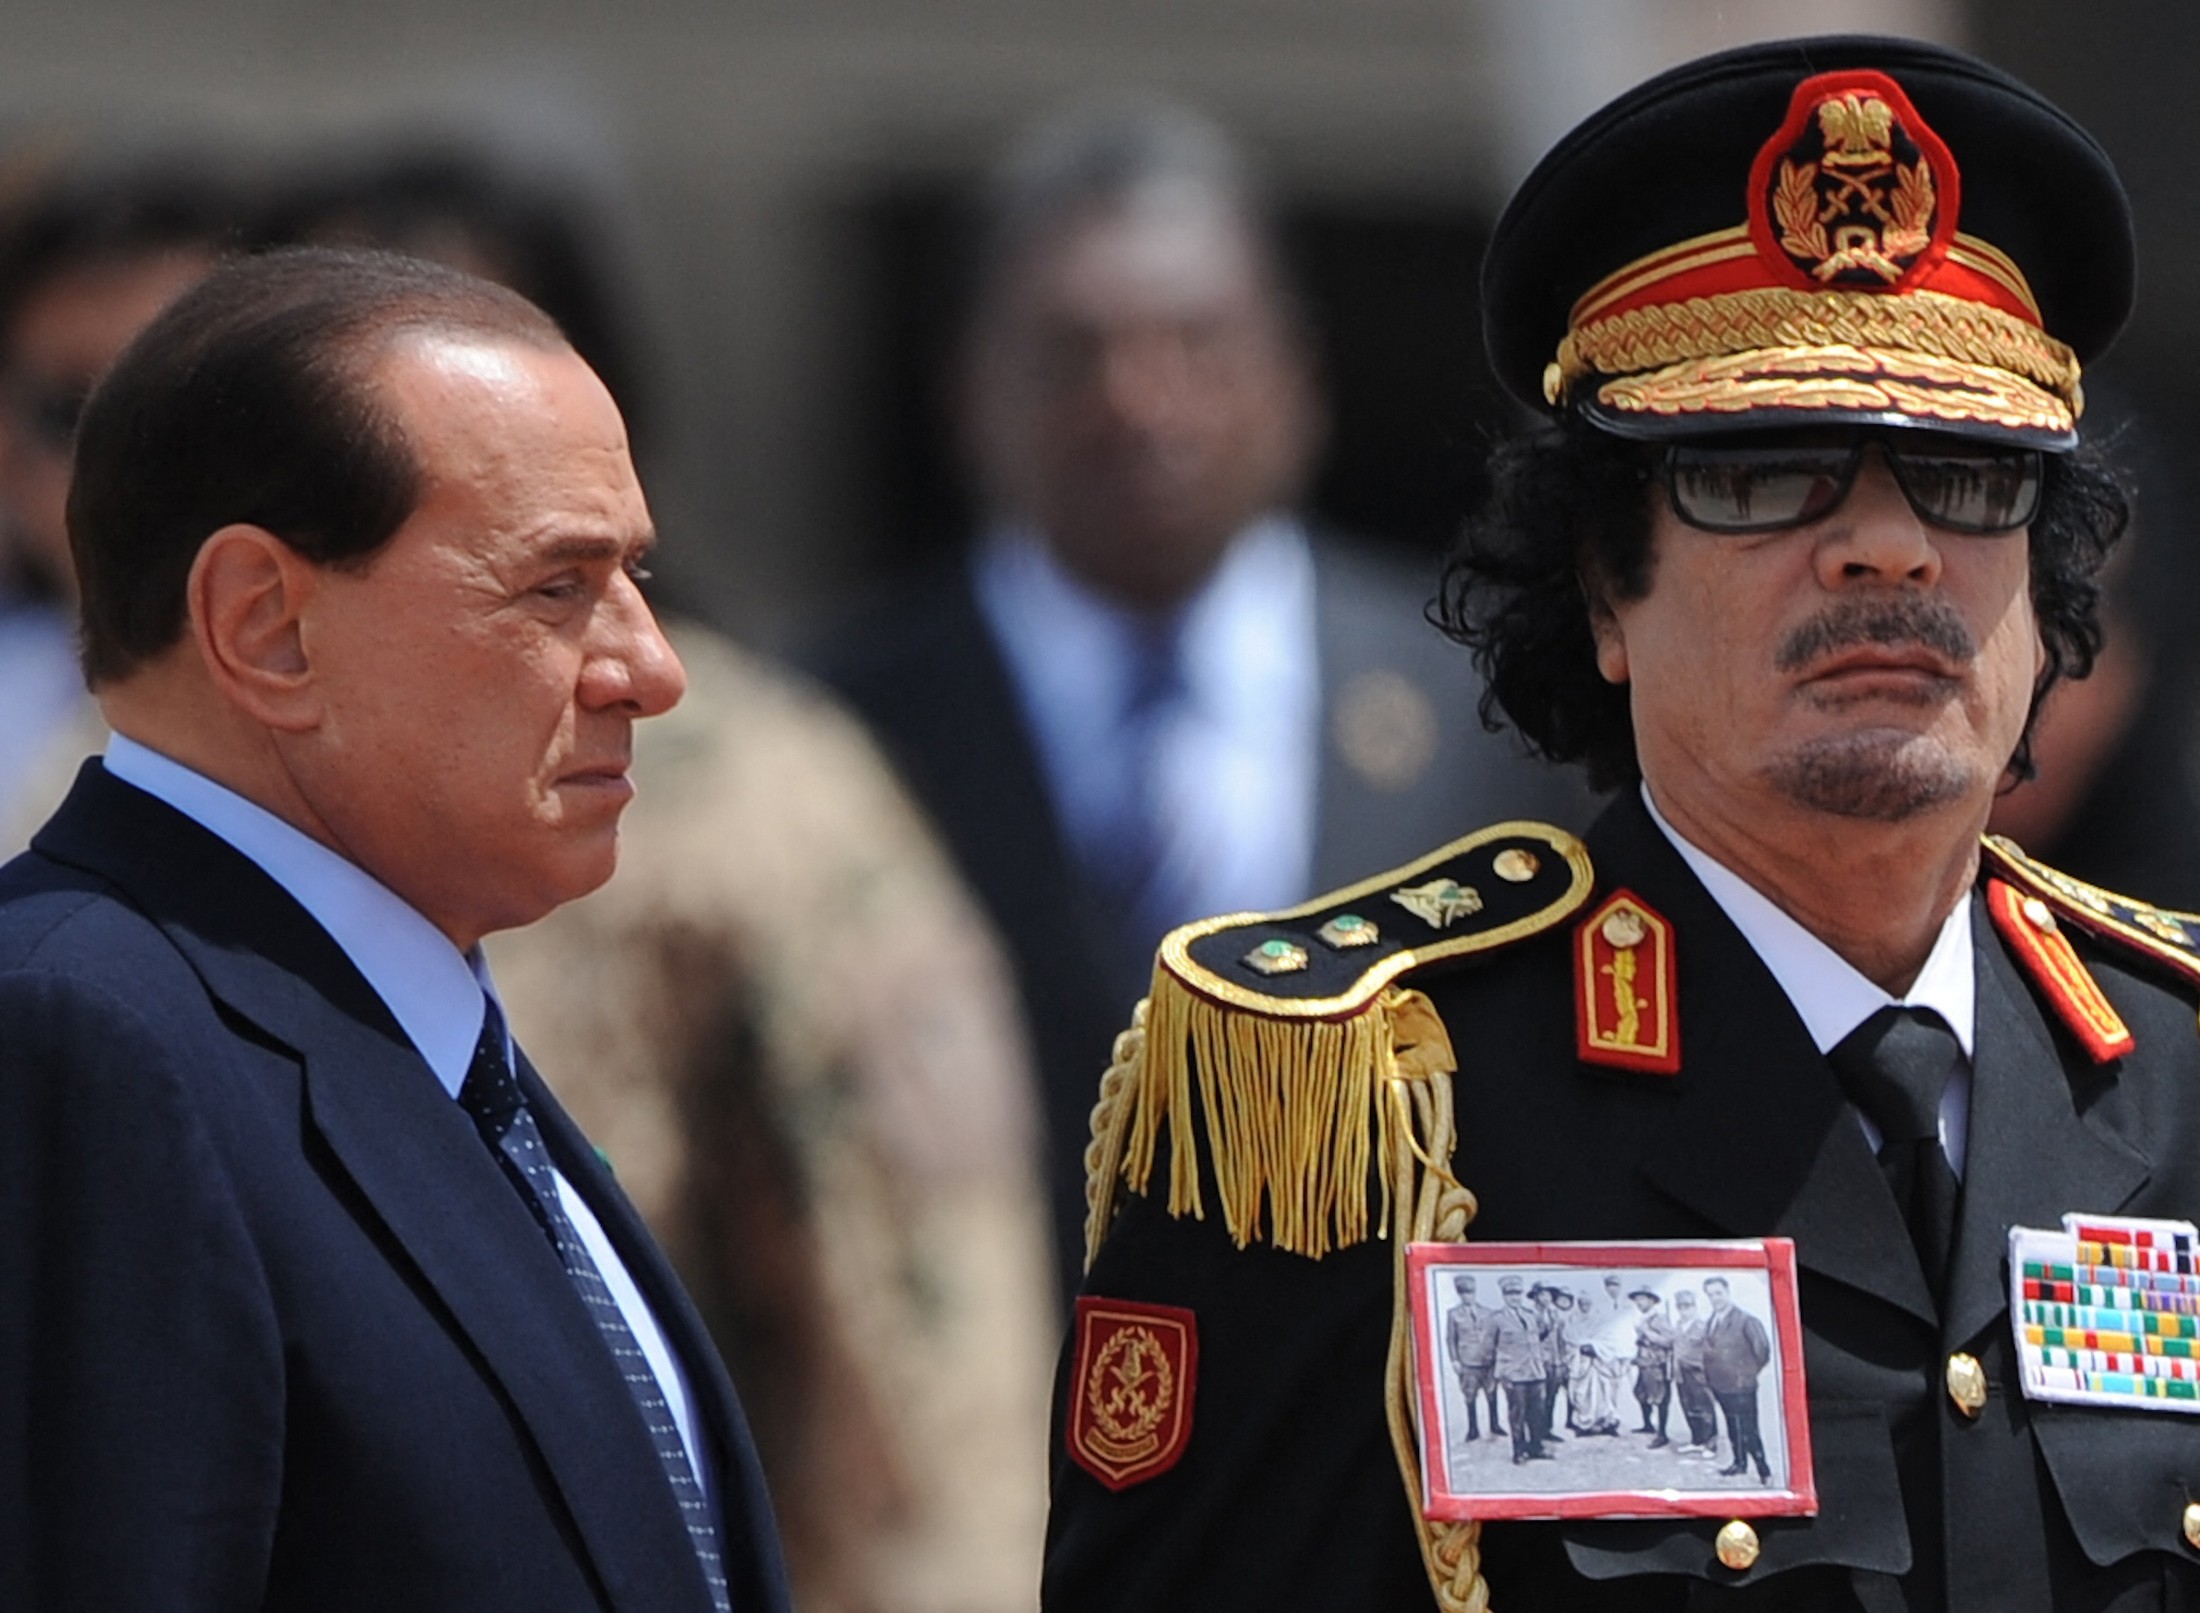 omar-mukhtar-gaddafi-wearing-during-rome-meeting-berlusconi-afp.jpg